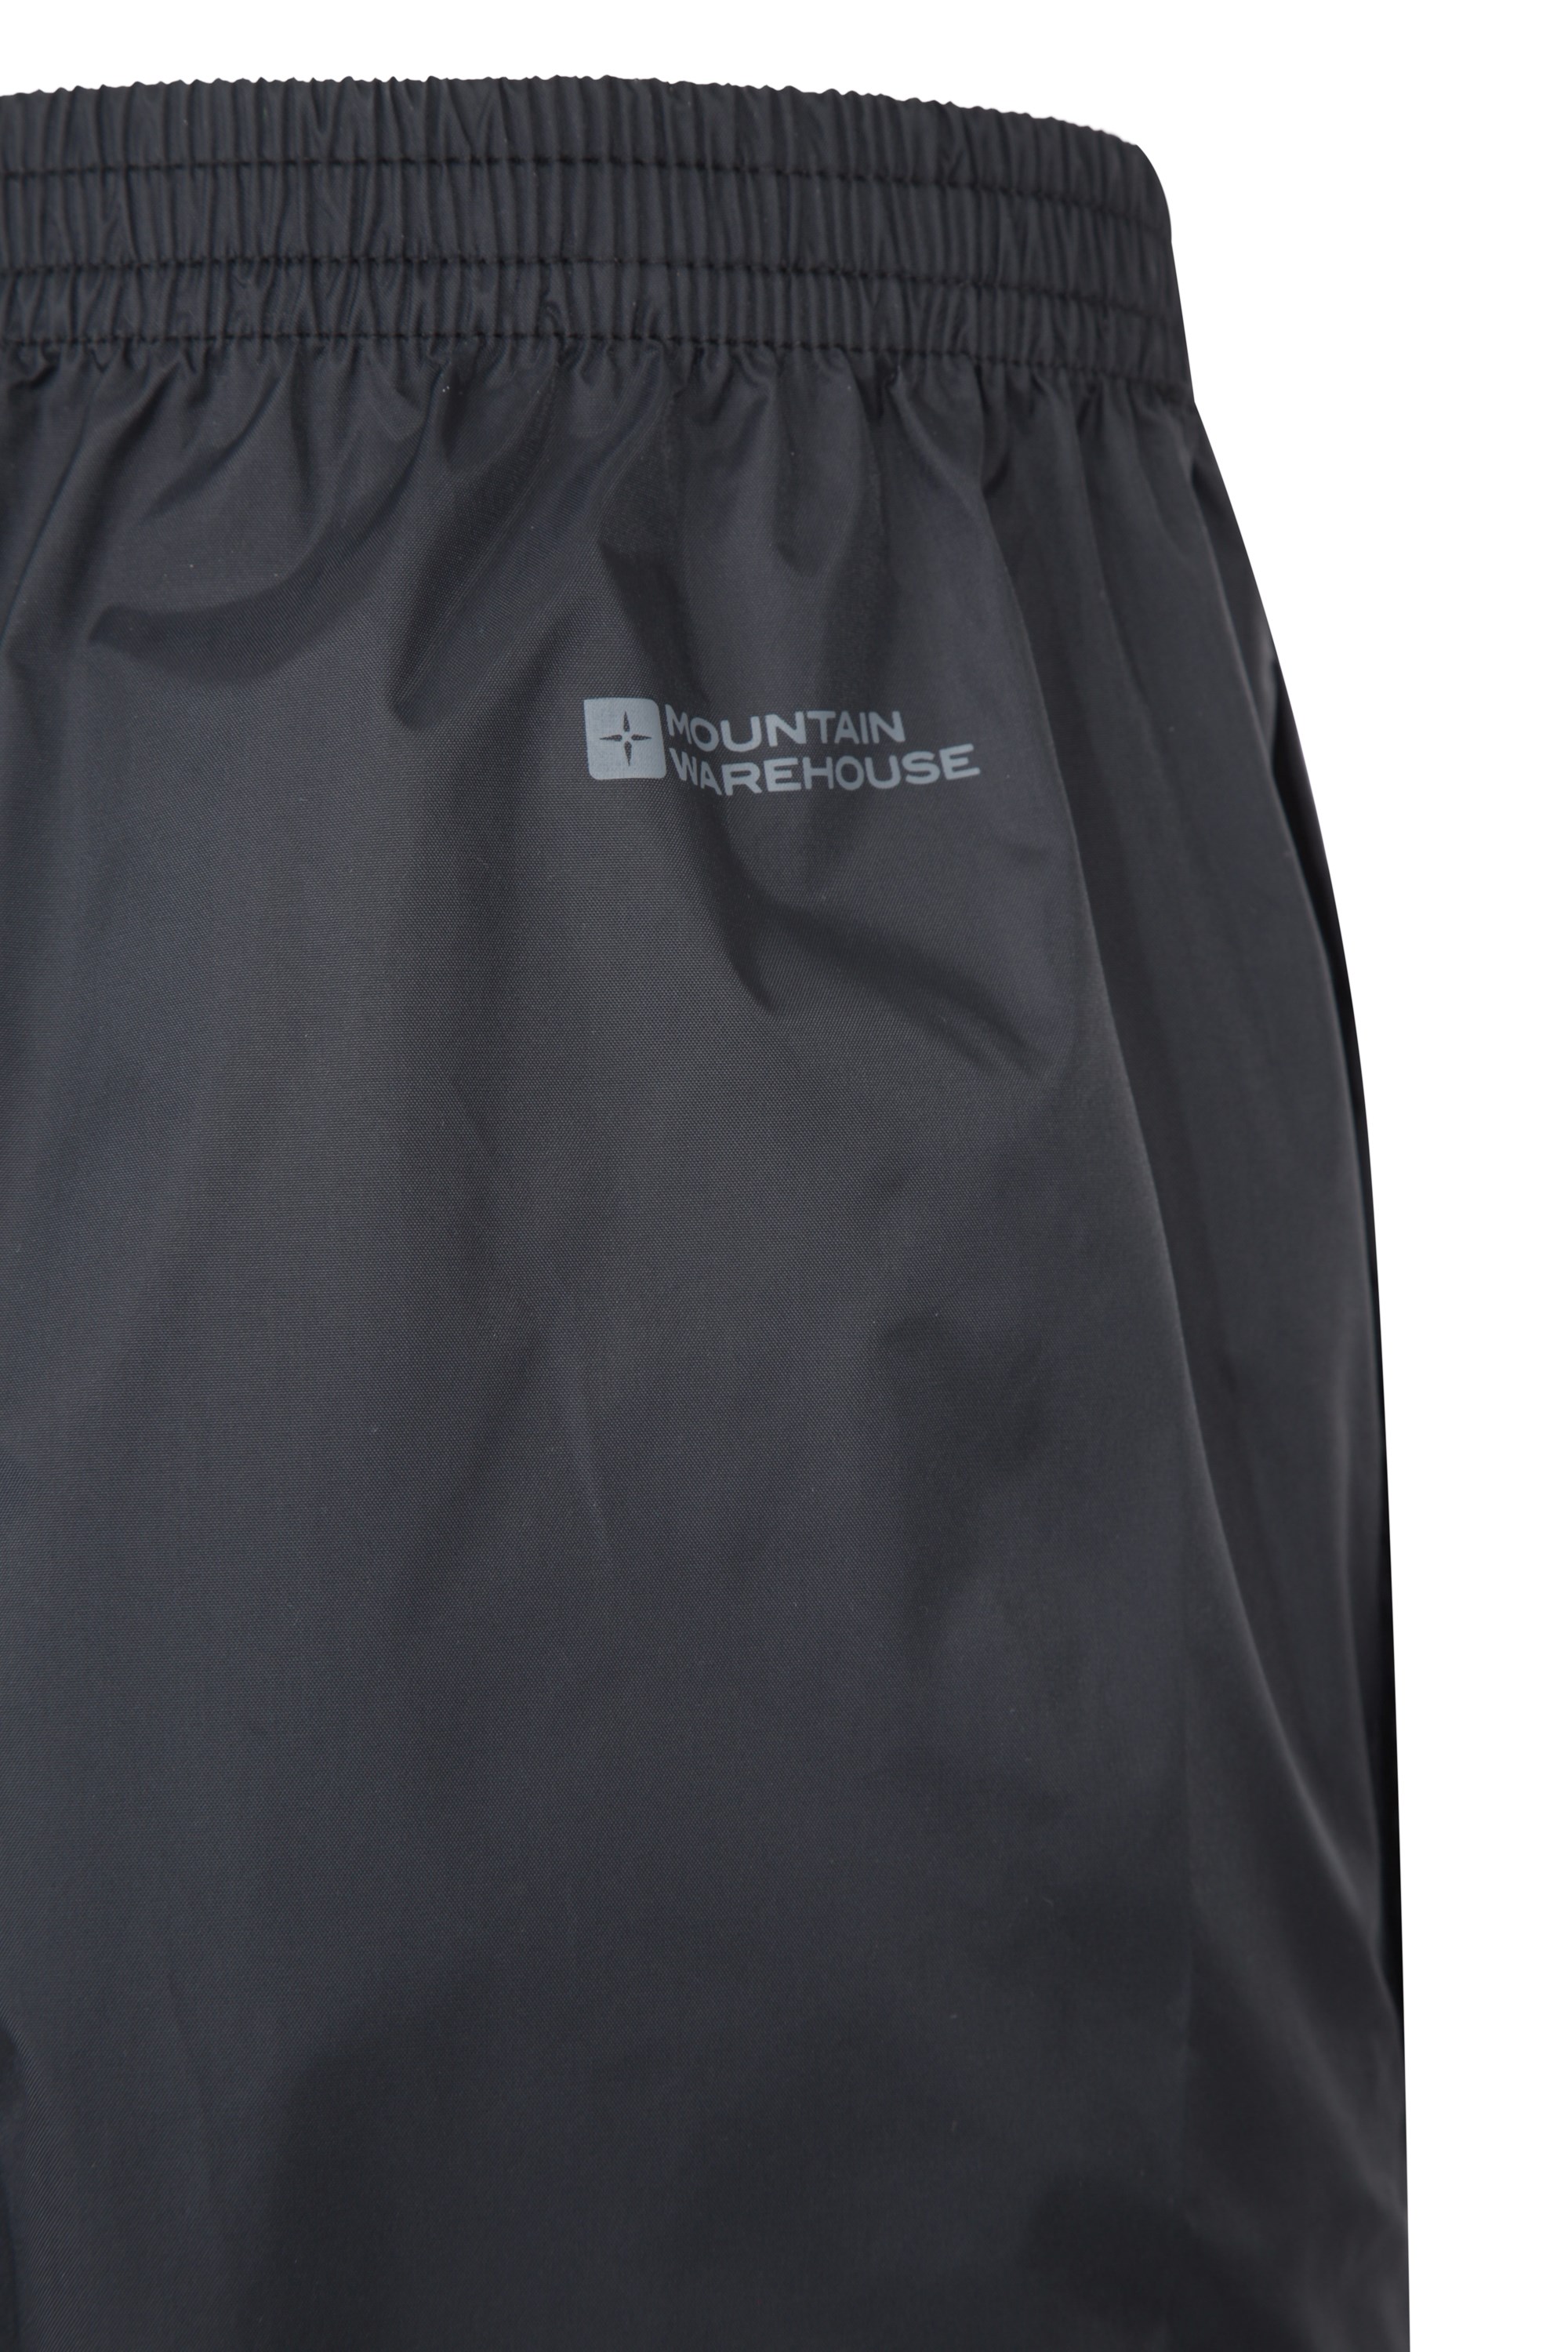 Anti-déchirure Doublure Maille Marque : Mountain WarehouseMountain Warehouse Surpantalon imperméable Extreme Downpour Hommes- Pantalon de Pluie imperméable Respirant 